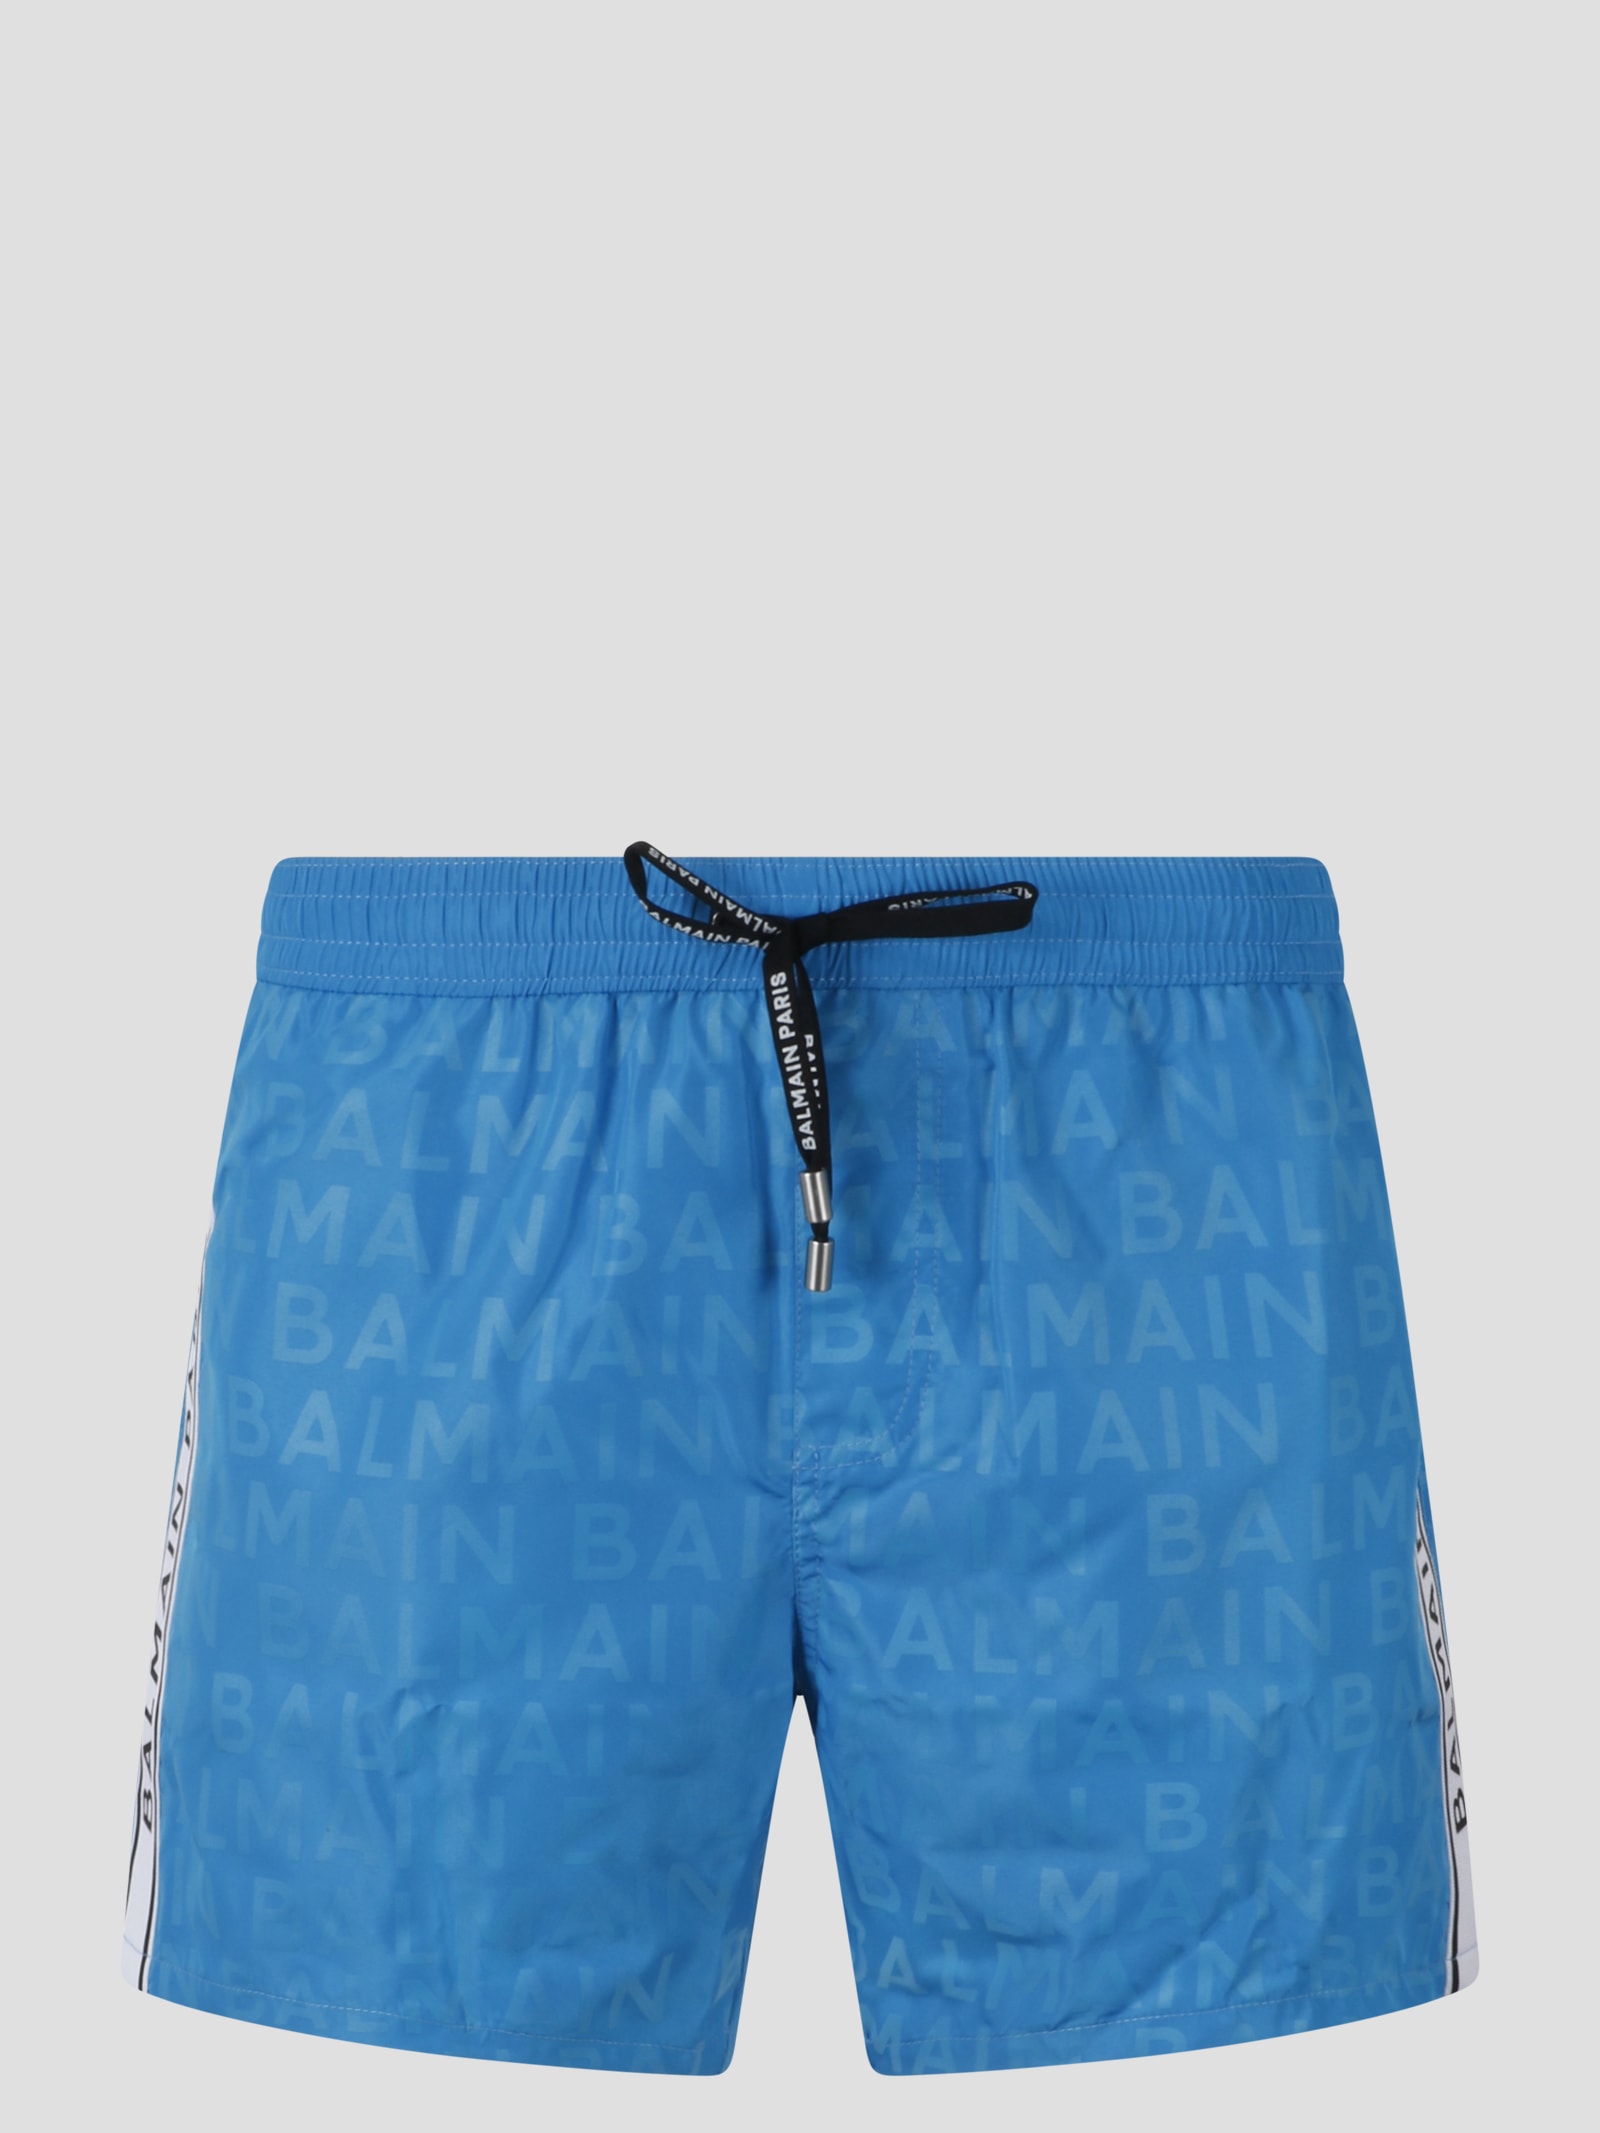 Balmain Logo Swim Shorts In Blue